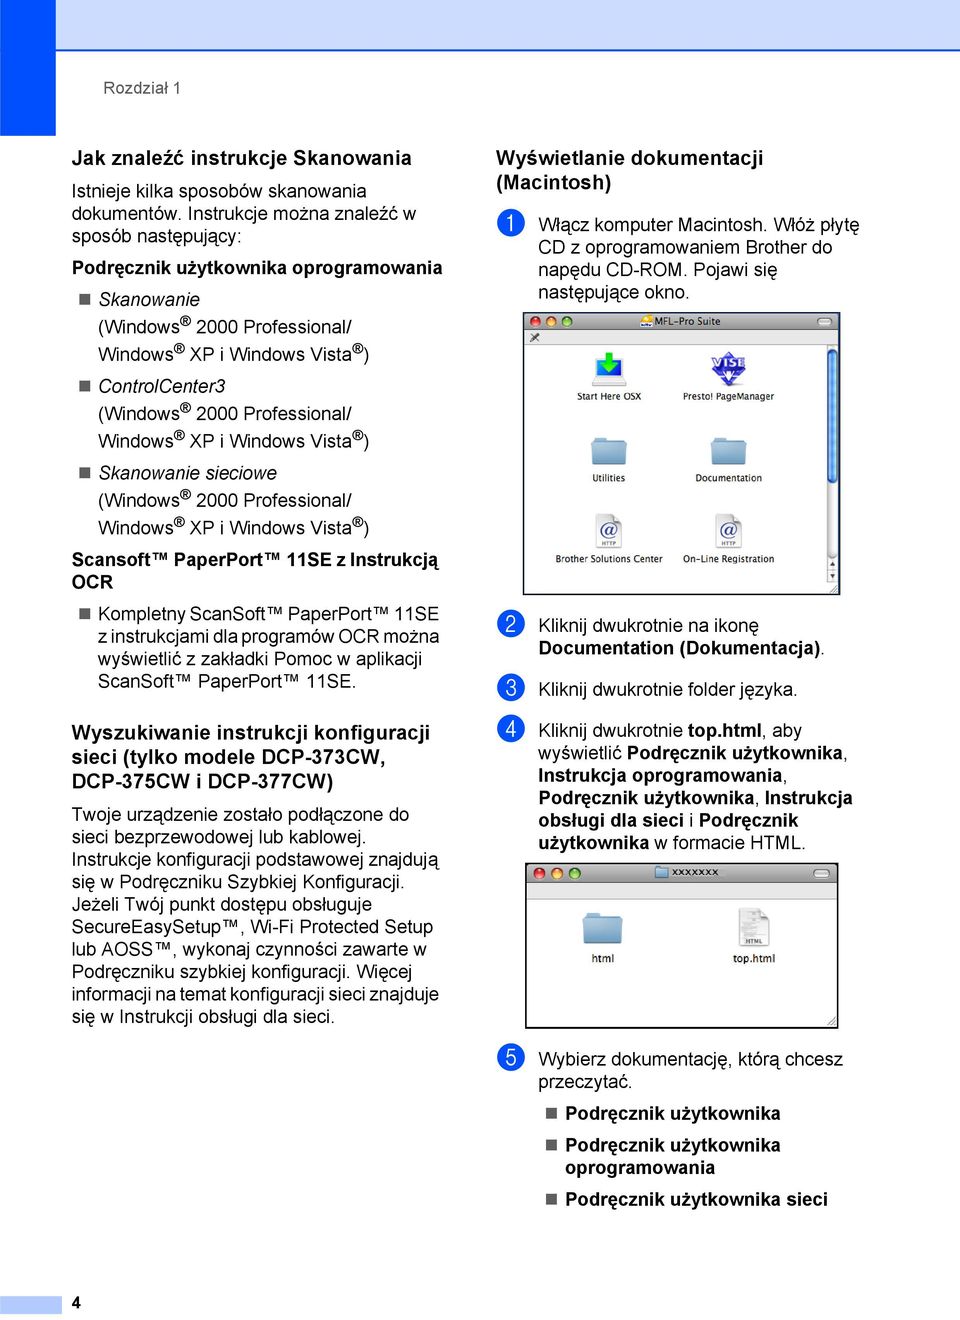 Windows XP i Windows Vista ) Skanowanie sieciowe (Windows 2000 Professional/ Windows XP i Windows Vista ) Scansoft PaperPort 11SE z Instrukcją OCR Kompletny ScanSoft PaperPort 11SE z instrukcjami dla